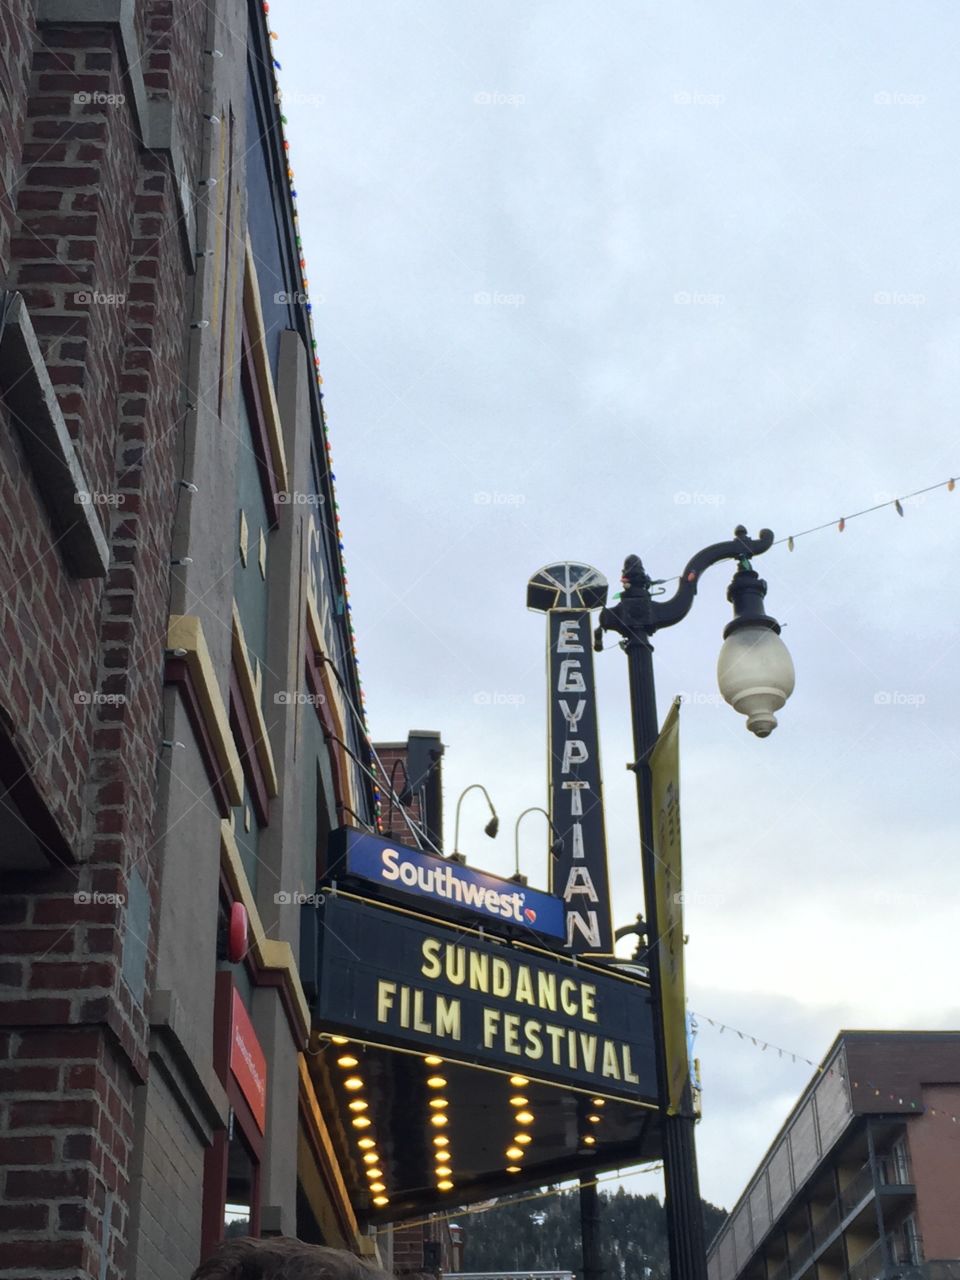 Egyptian Theater, Park City, Utah. Egyptian Theater, Park City, Utah during Sundance Film Festival 2015